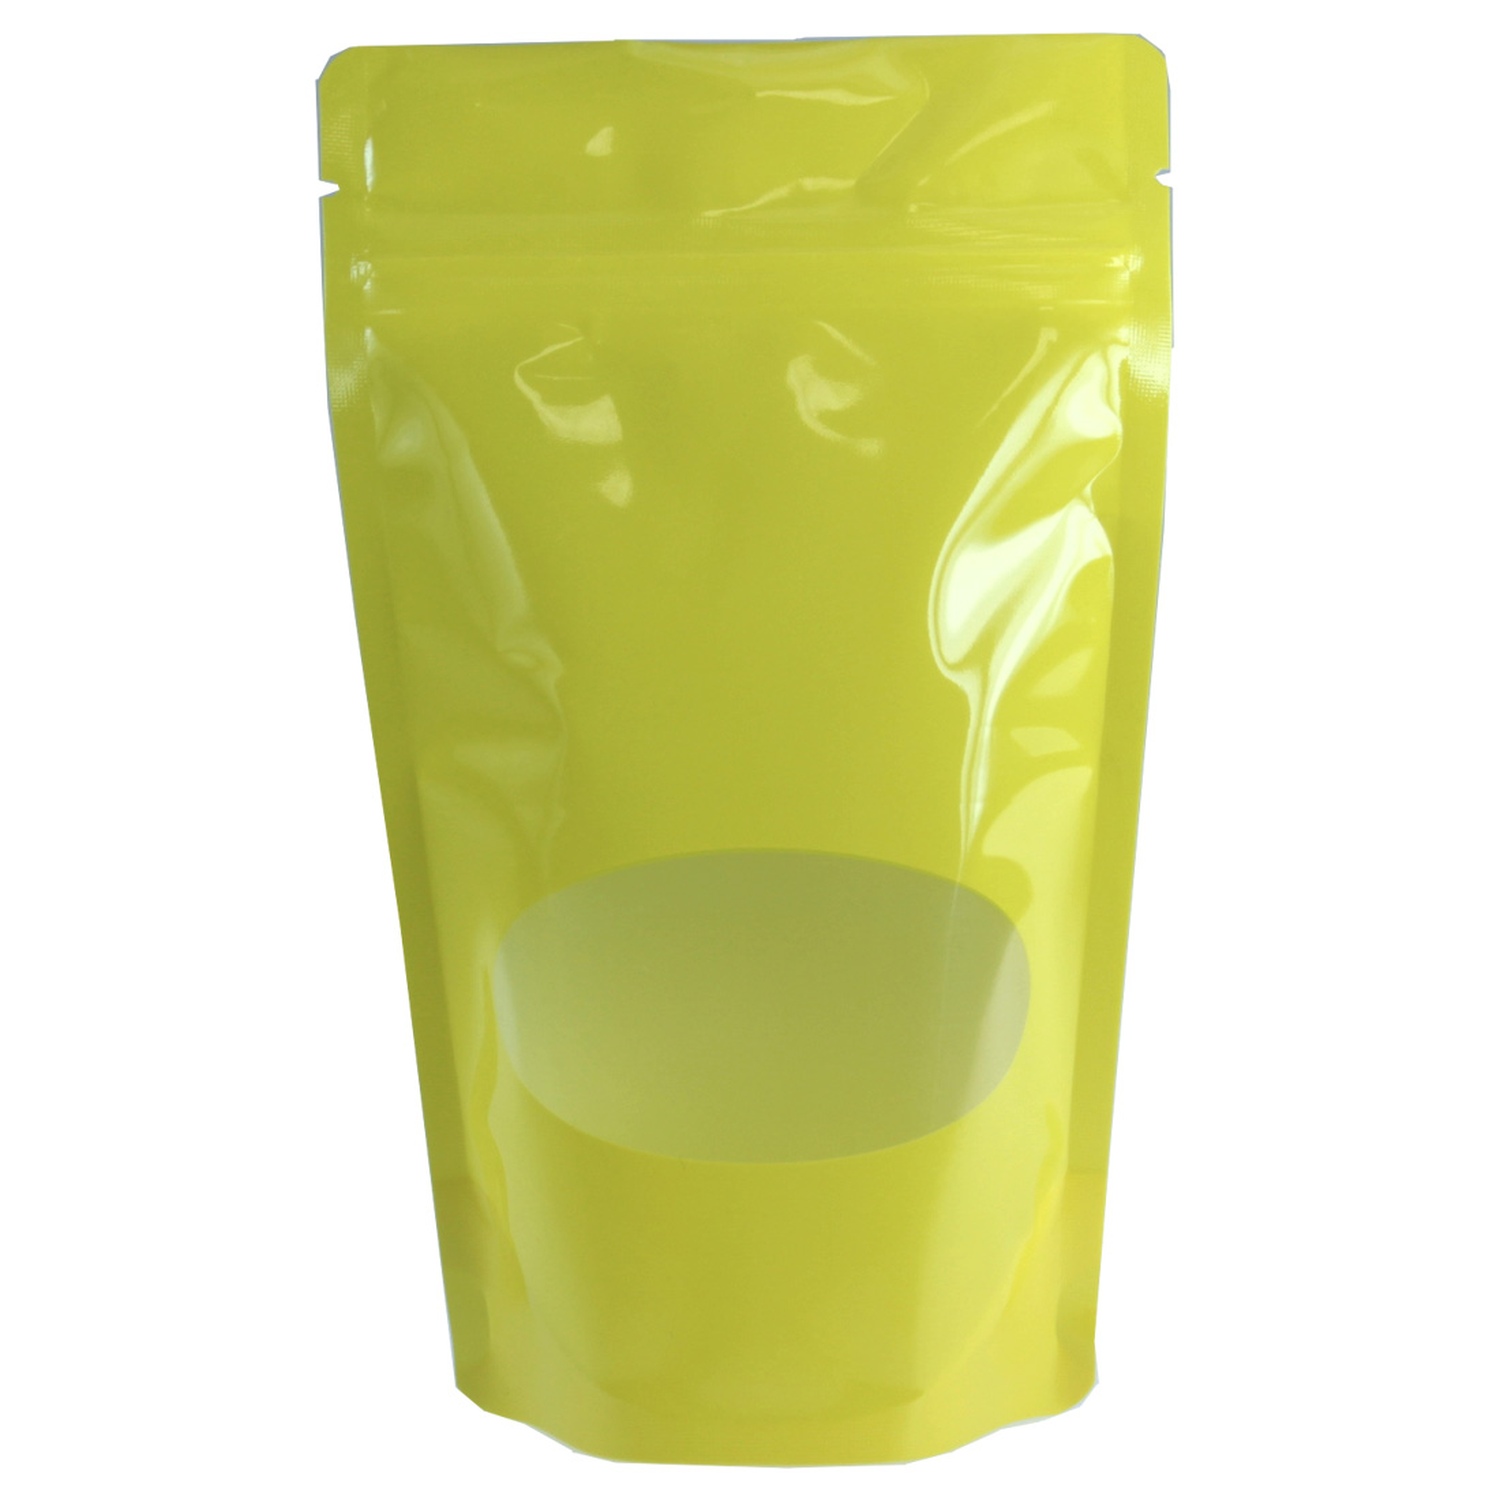 Standbodenbeutel PET gelb glnzend, mit Fenster, 110x185x65mm, 250ml, 1000 Stk.